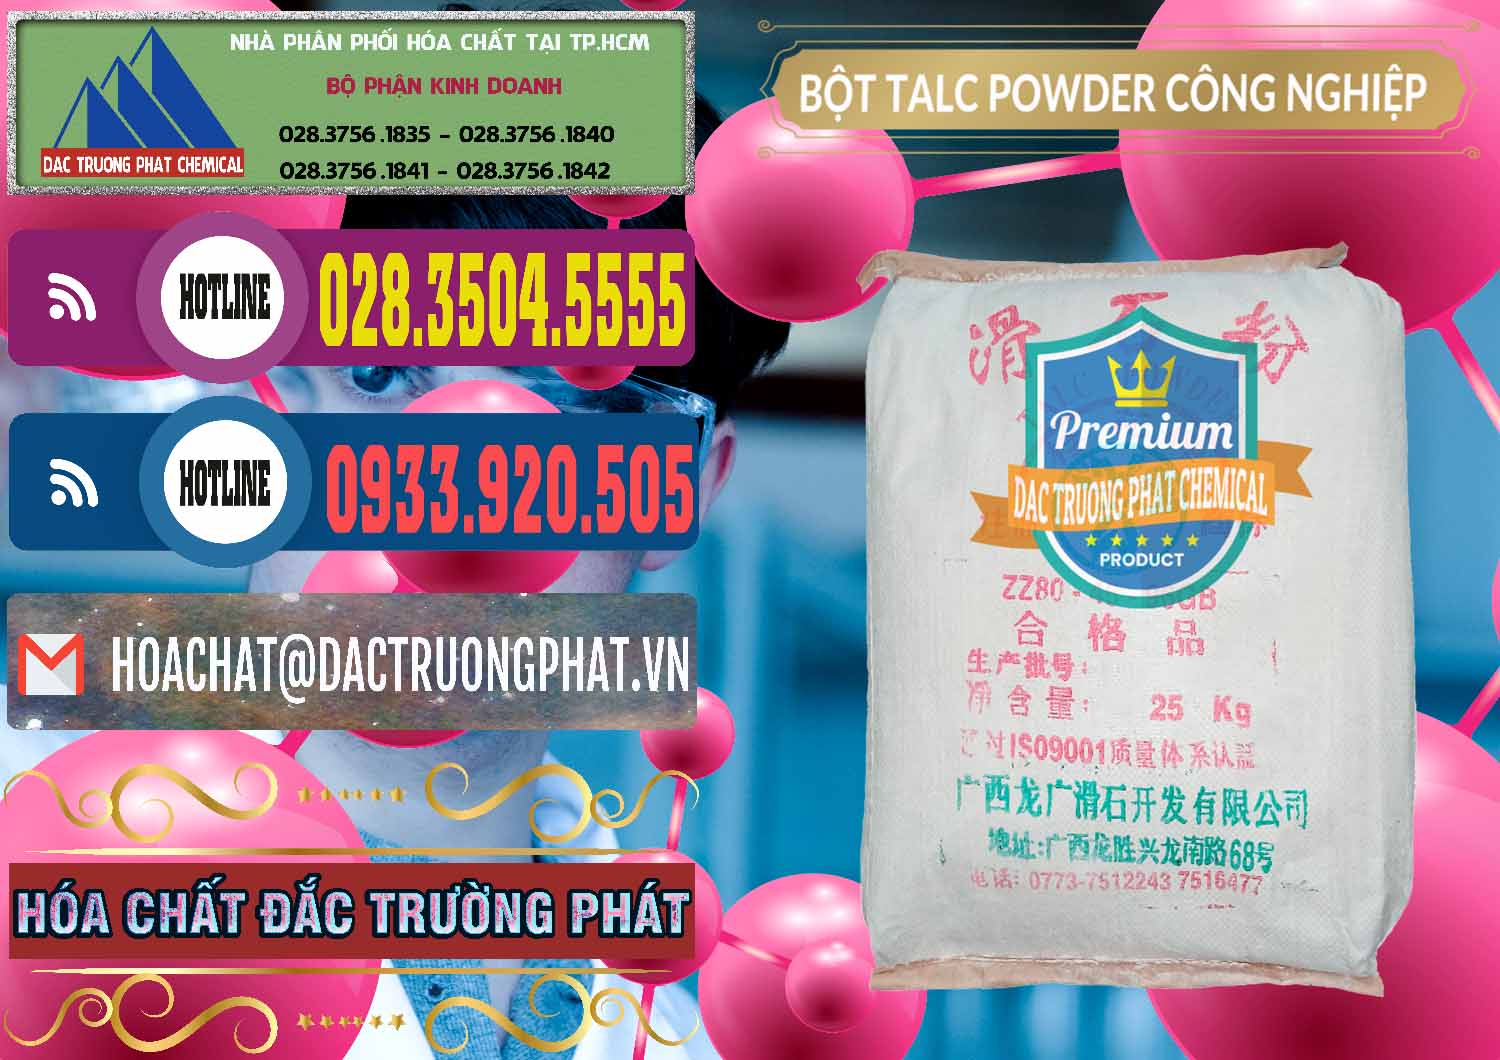 Nơi chuyên phân phối ( bán ) Bột Talc Powder Công Nghiệp Trung Quốc China - 0037 - Nơi phân phối _ bán hóa chất tại TP.HCM - muabanhoachat.com.vn